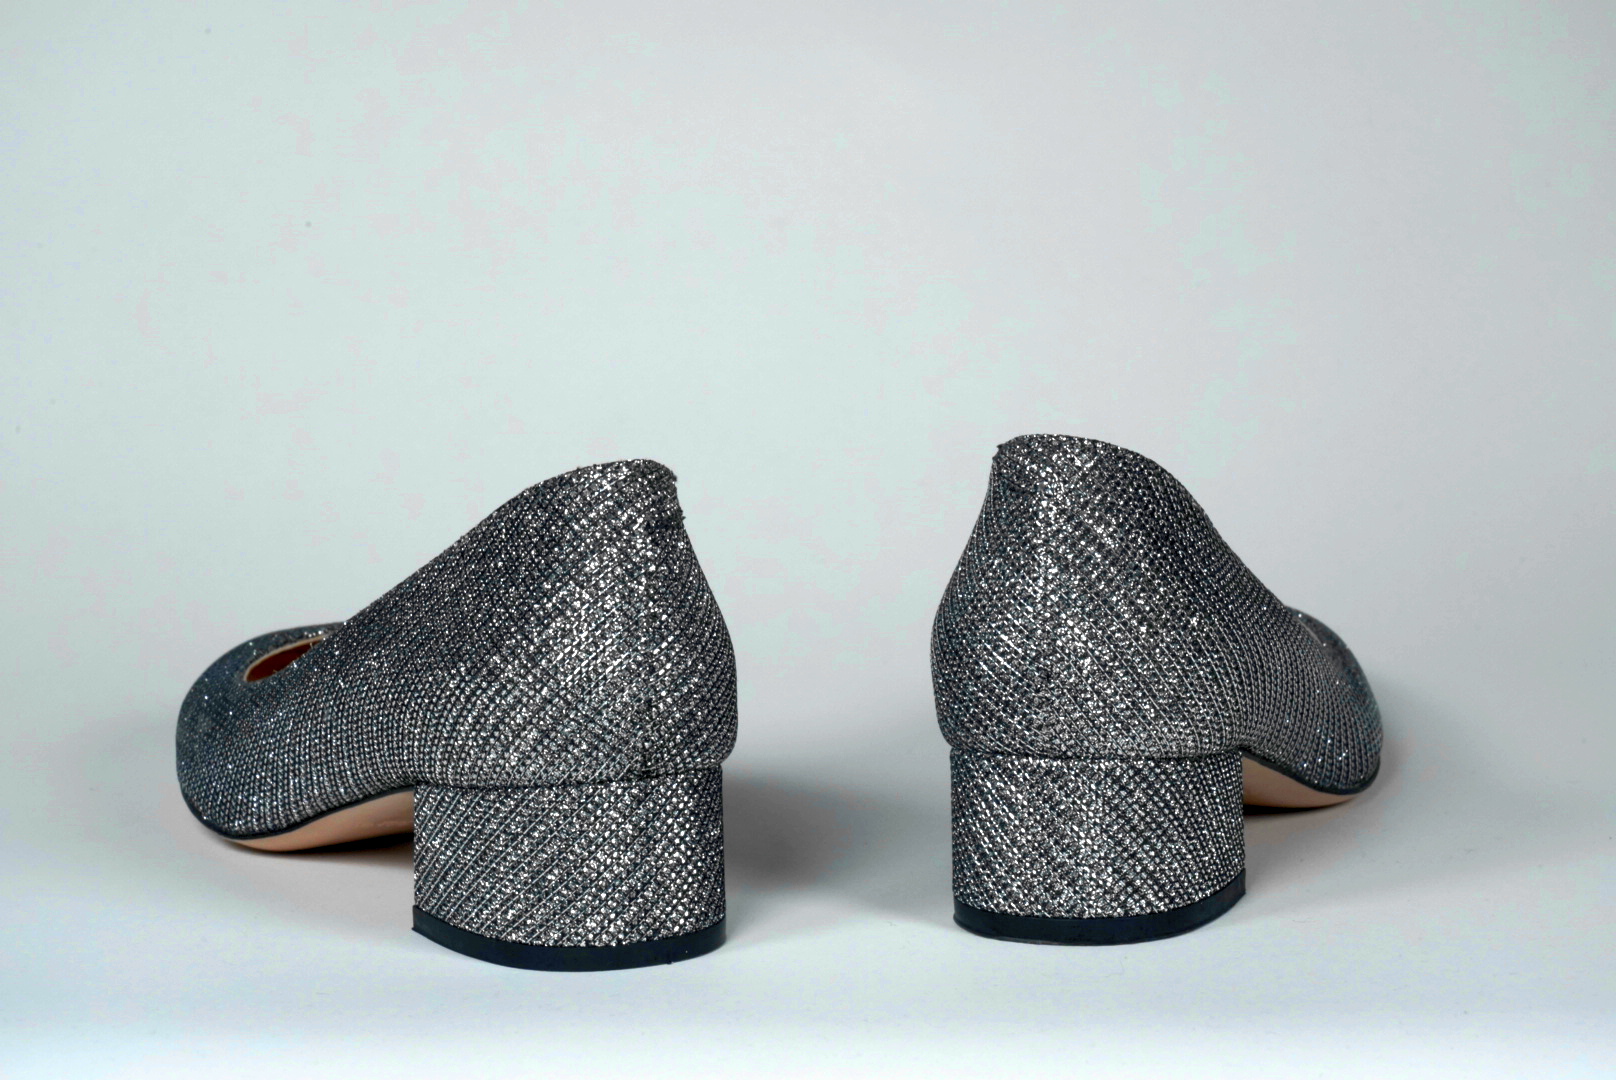 silver glitter low block heels